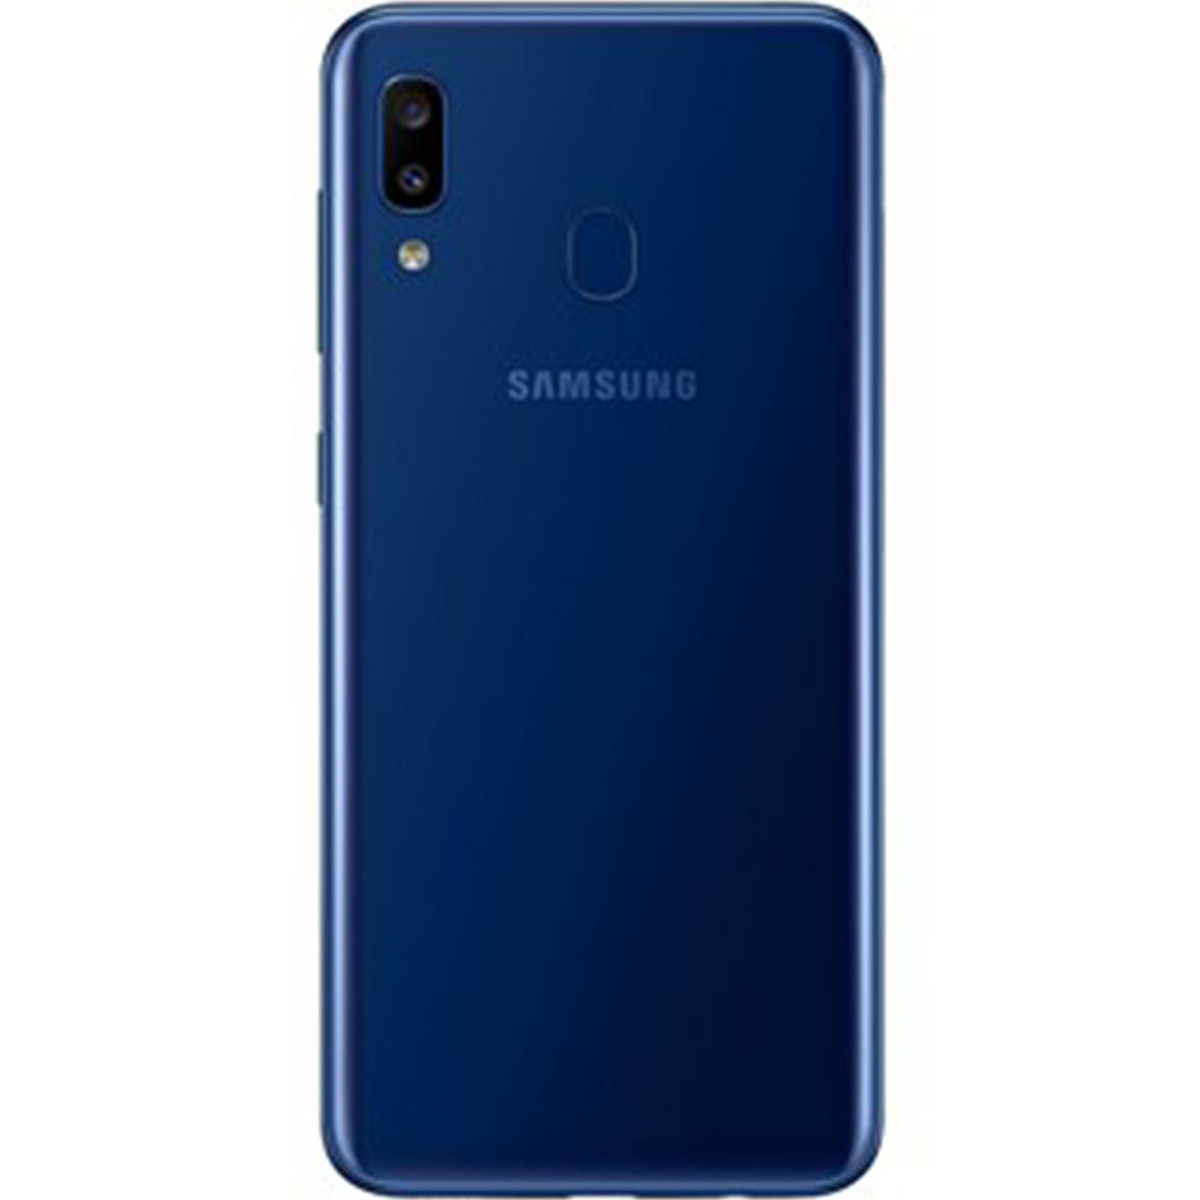 Buy Samsung Galaxy A20 Sma205 32gb Blue Online Lulu Hypermarket Ksa